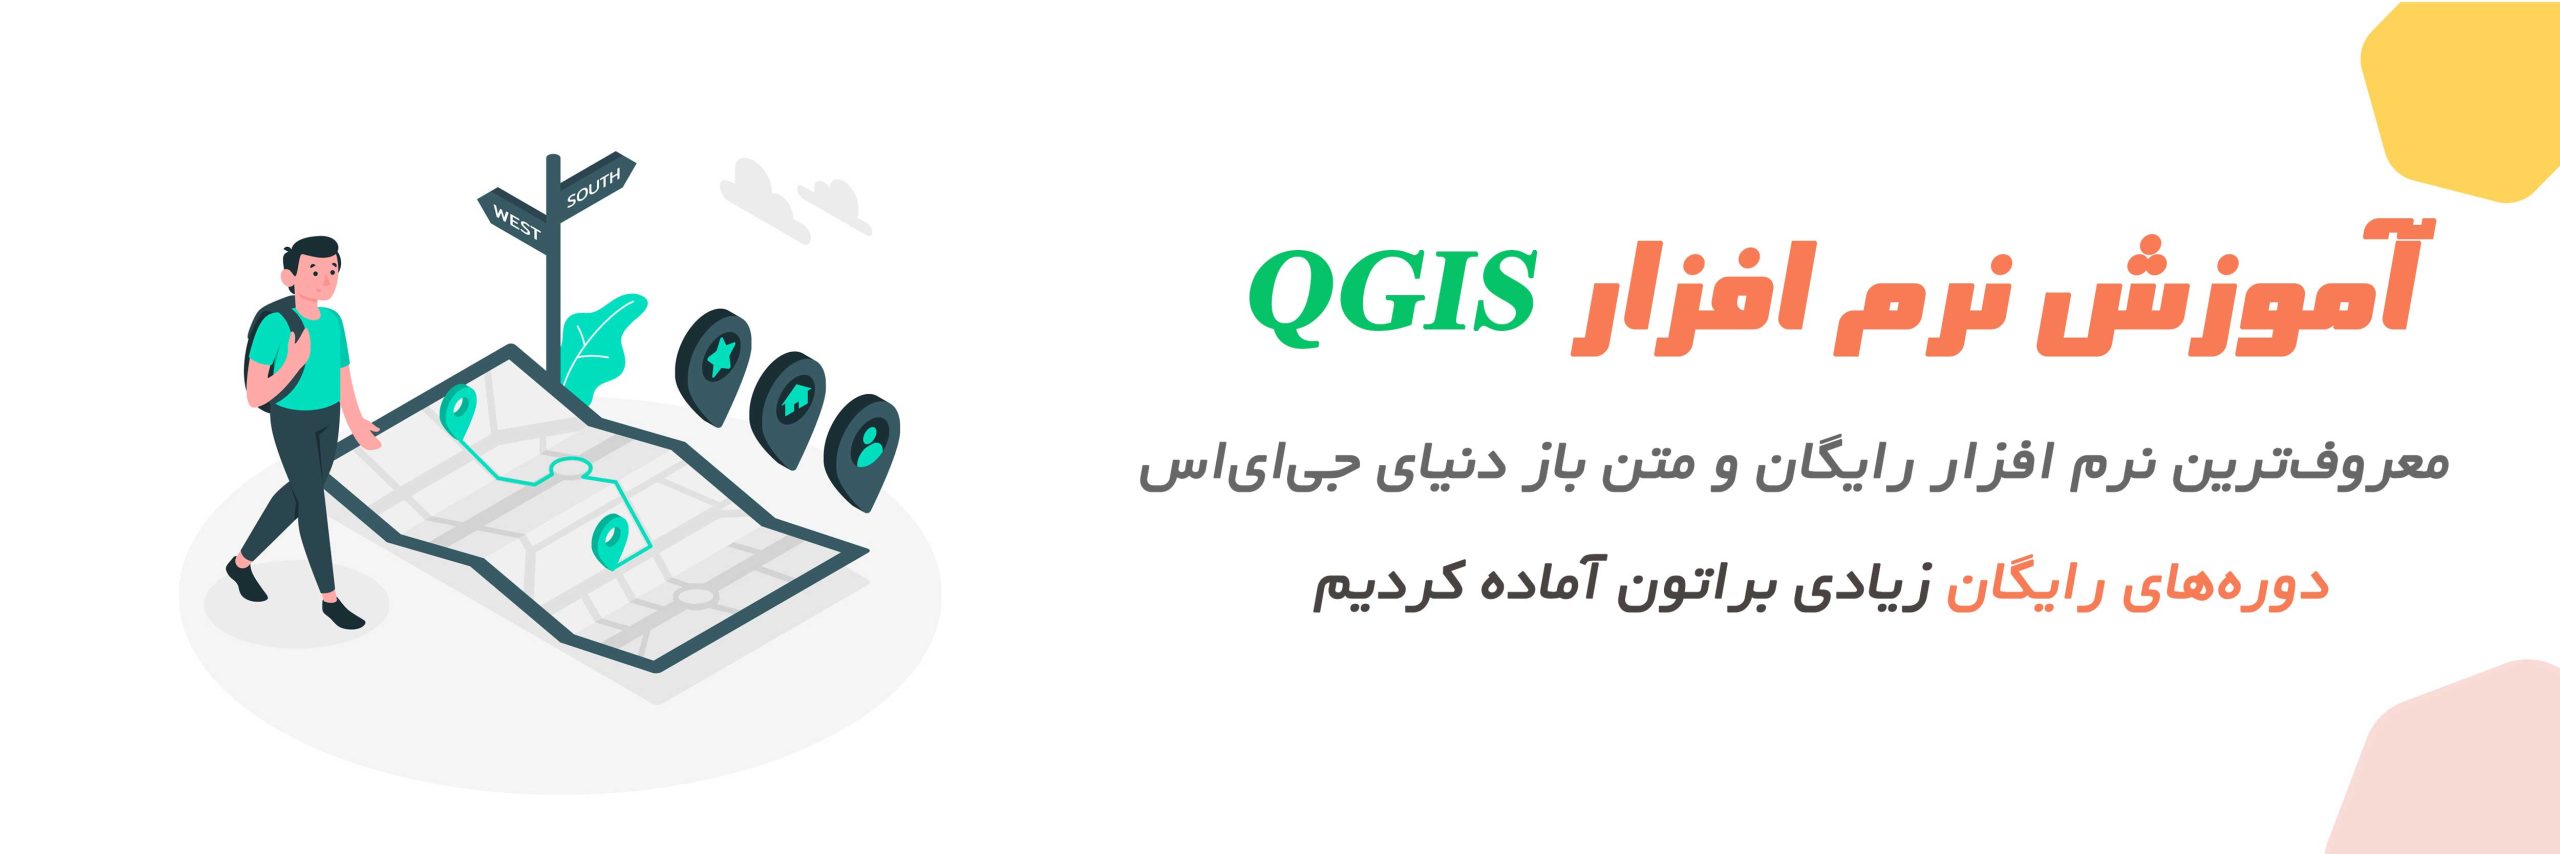 آموزش نرم افزار QGIS